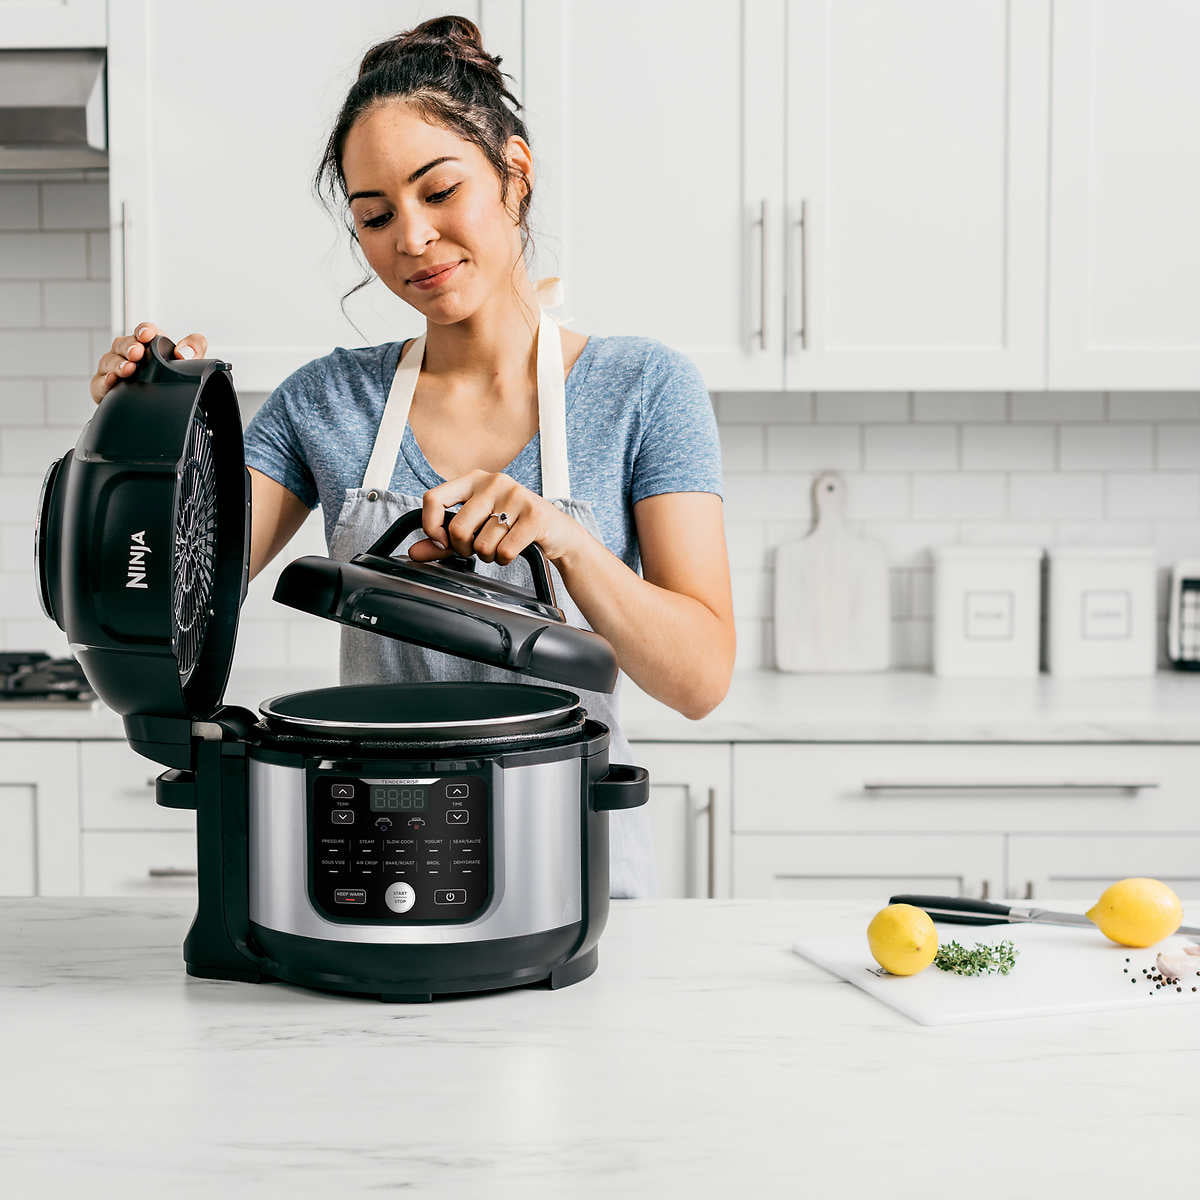 Ninja Foodi Pro 6.5-Quart Pressure Cooker with TenderCrisp